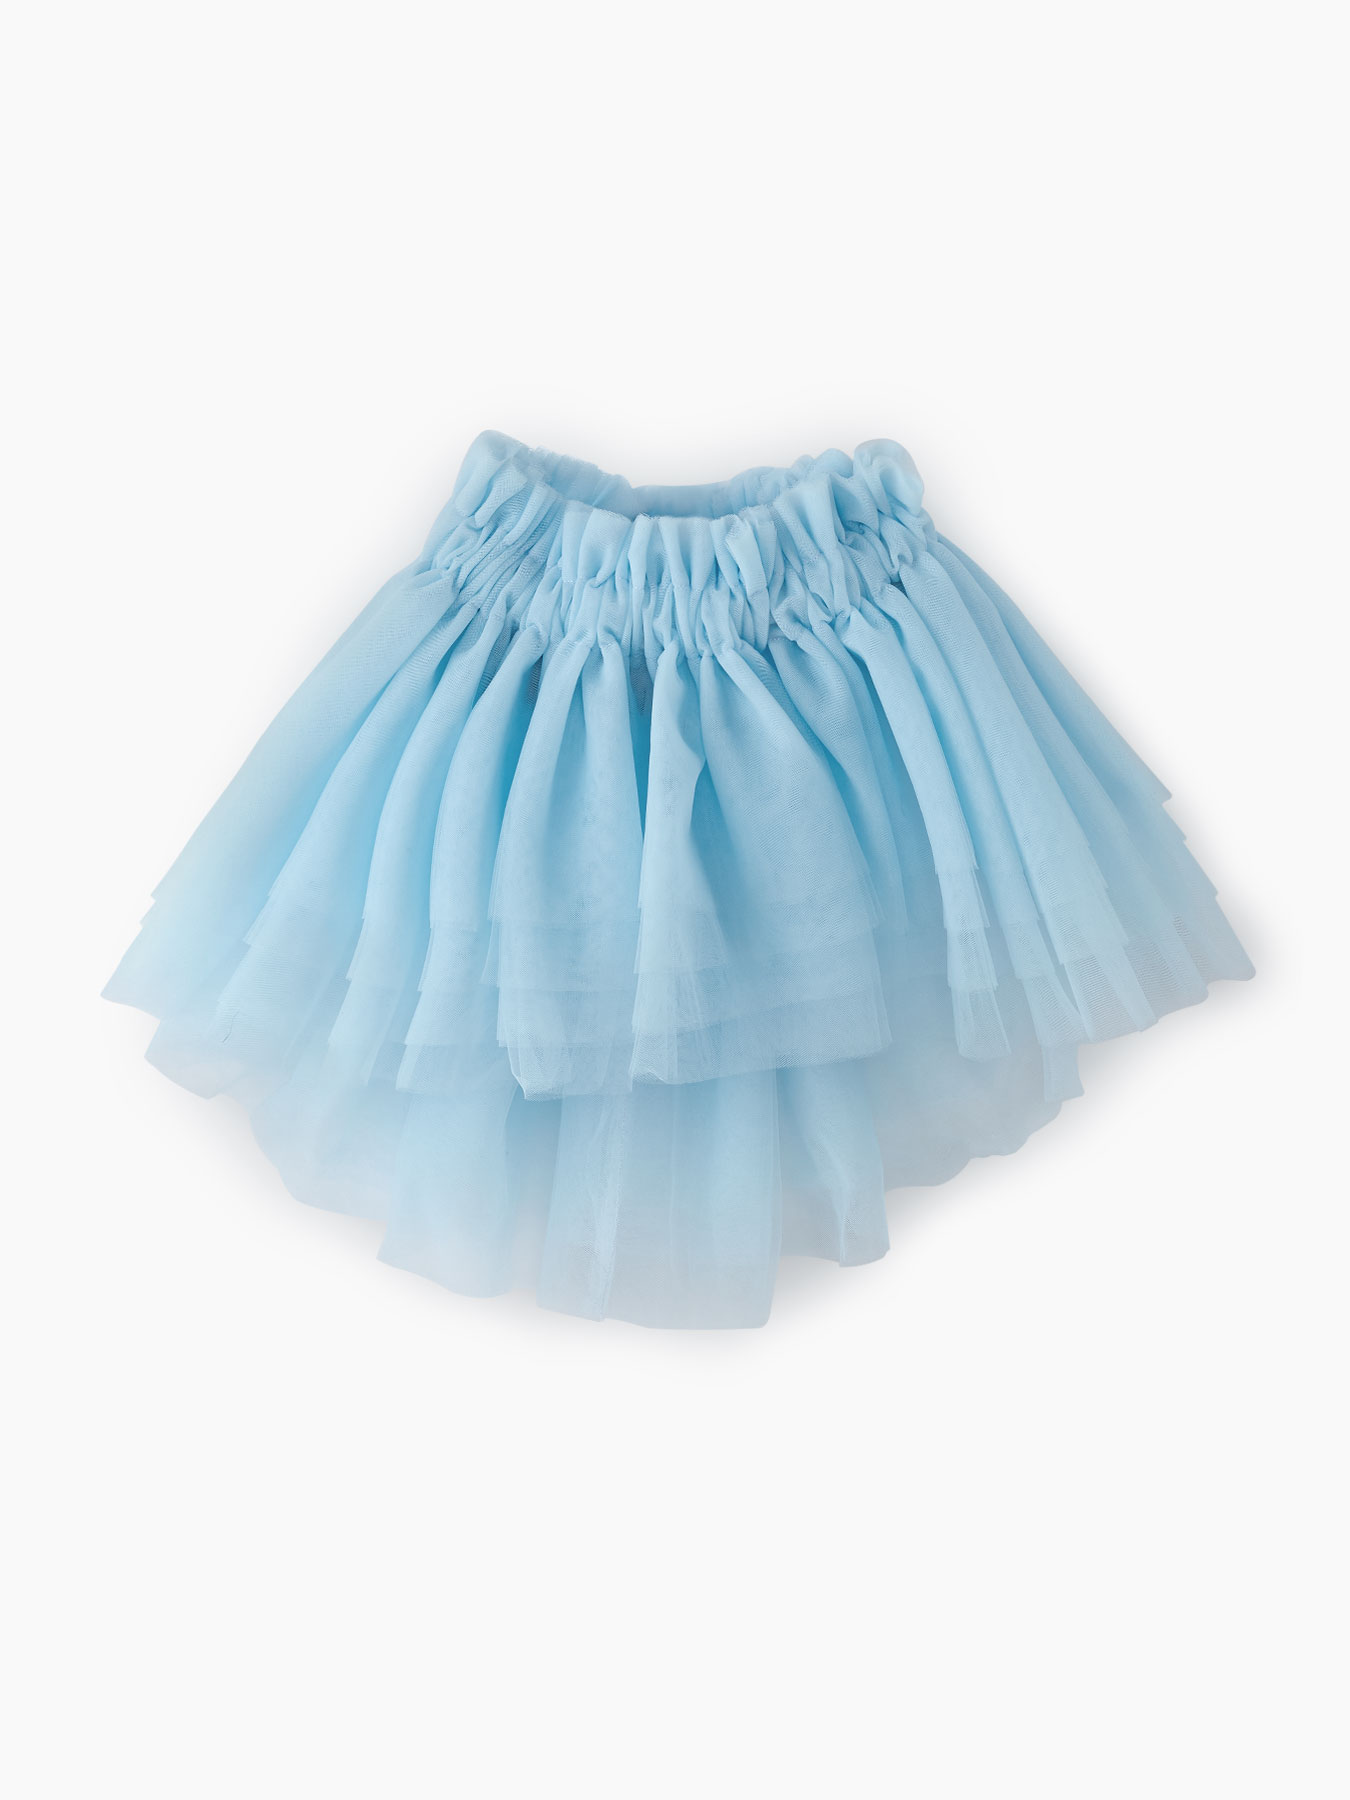 Пышная юбка из фатина (light blue, 104-116) Happy Baby голубой  104-116